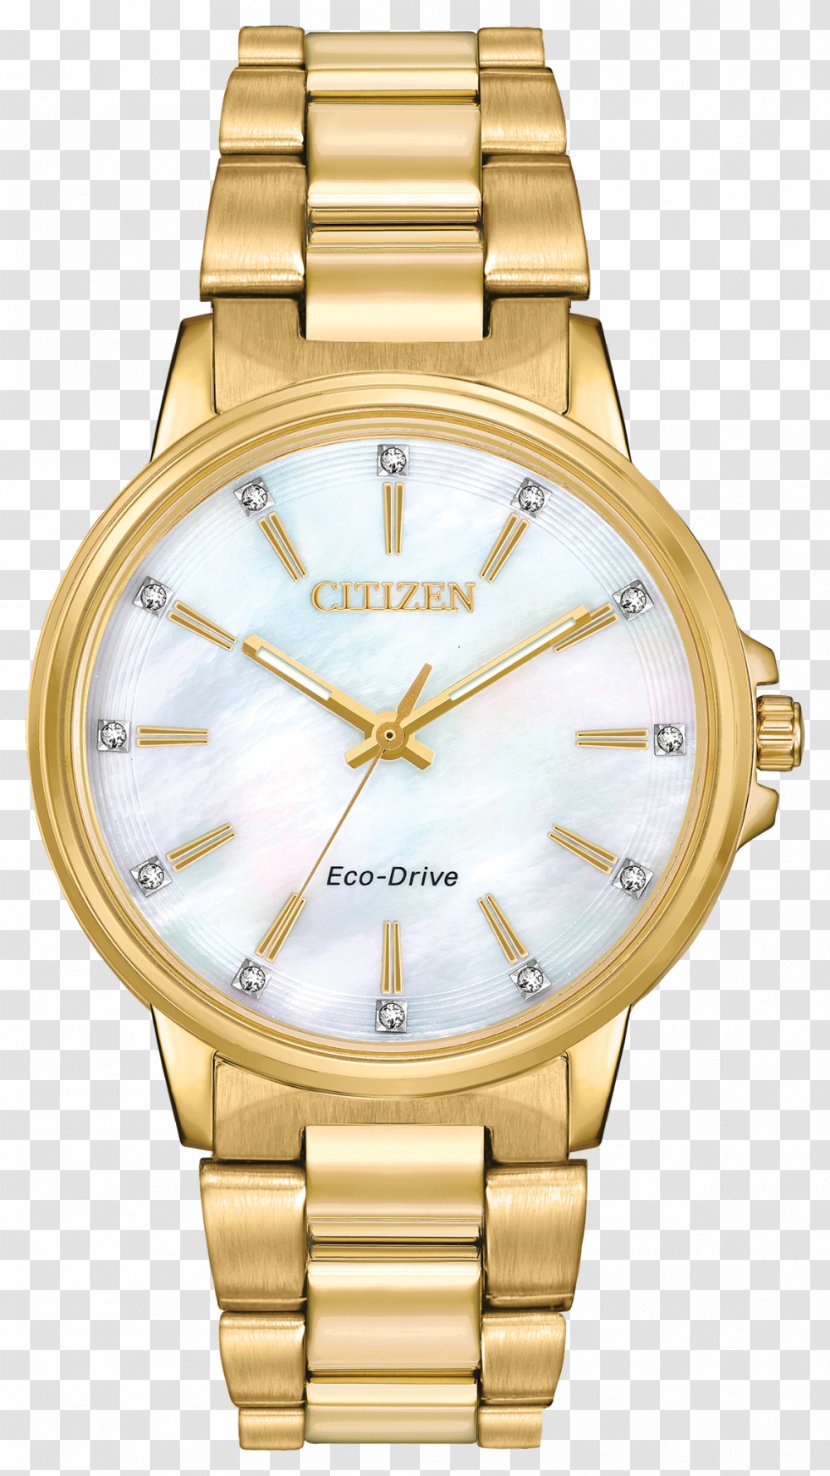 Eco-Drive Watch Seiko Citizen Holdings Automatic Quartz Transparent PNG